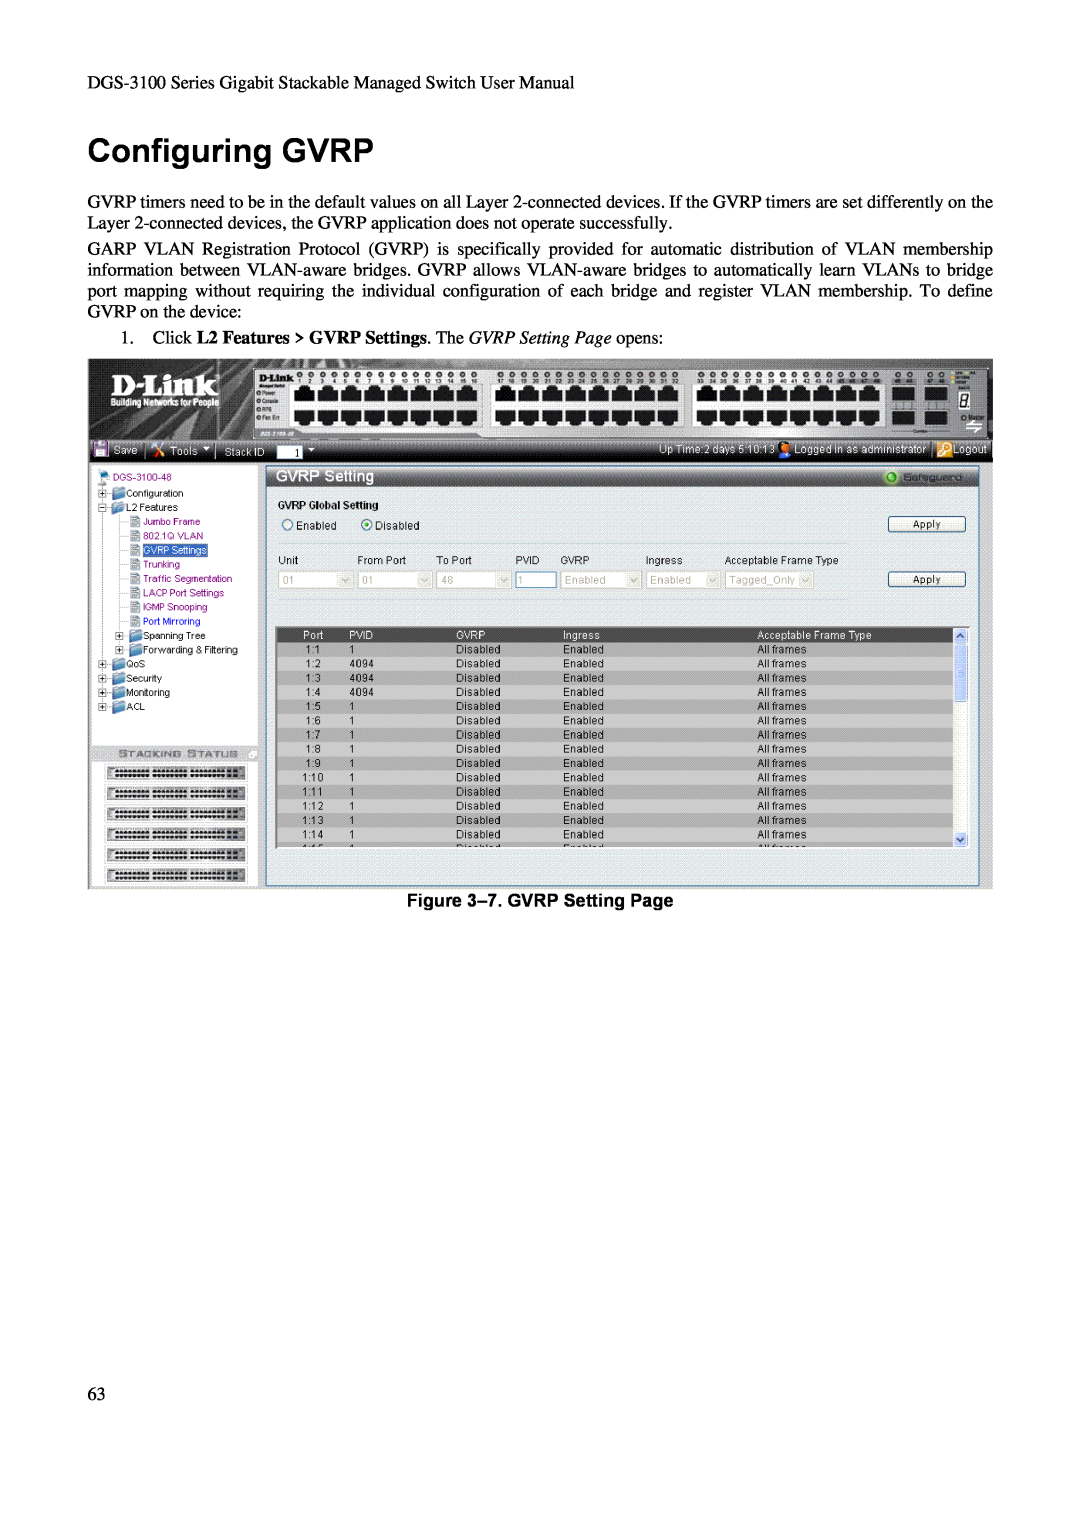 D-Link DGS-3100 Configuring GVRP, Click L2 Features GVRP Settings. The GVRP Setting Page opens, 7. GVRP Setting Page 